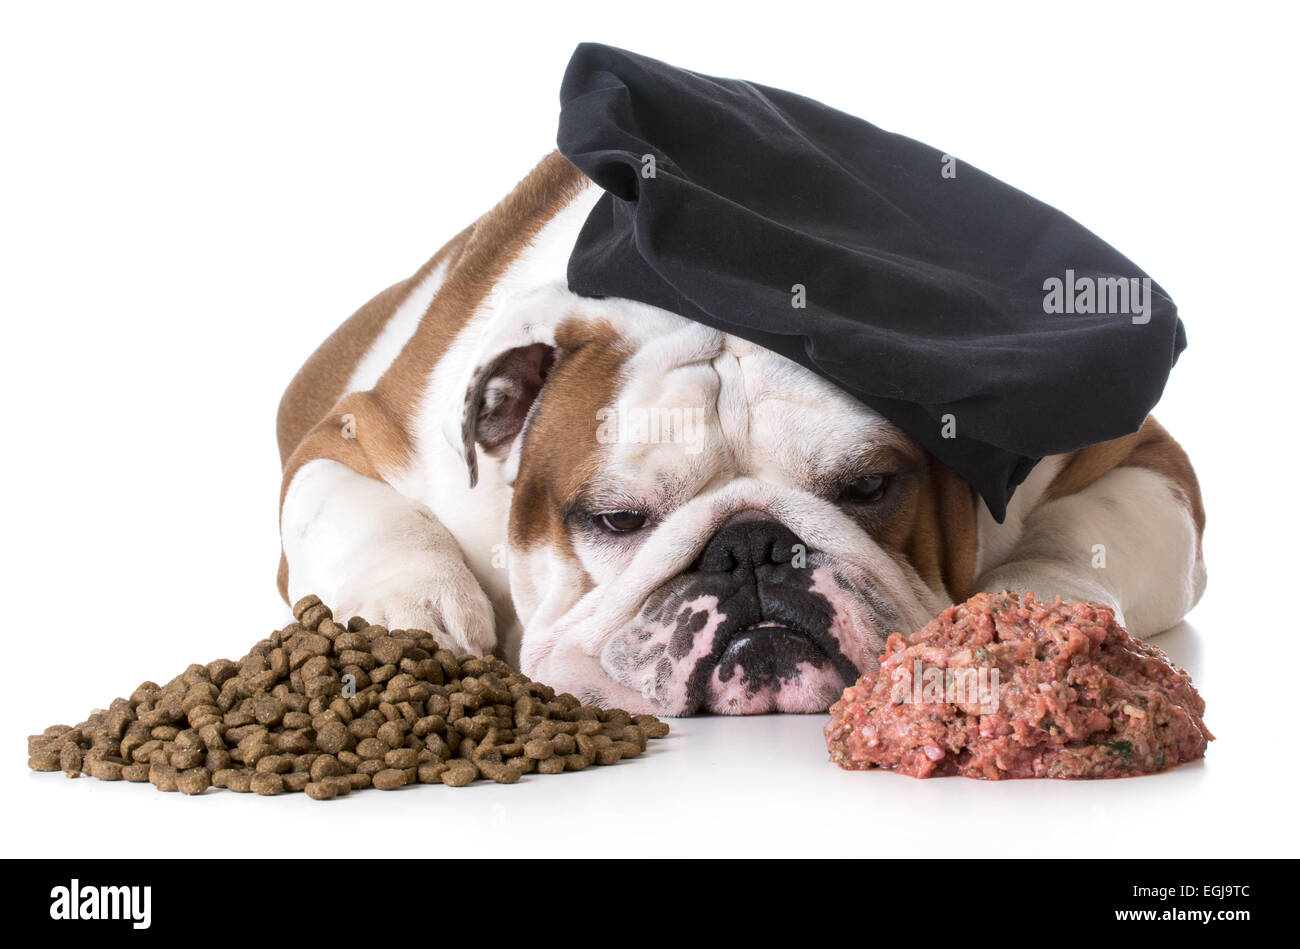 Débat - nourriture pour chien bulldog chef fixant entre tas de matières premières et de la nourriture pour chiens croquette Banque D'Images